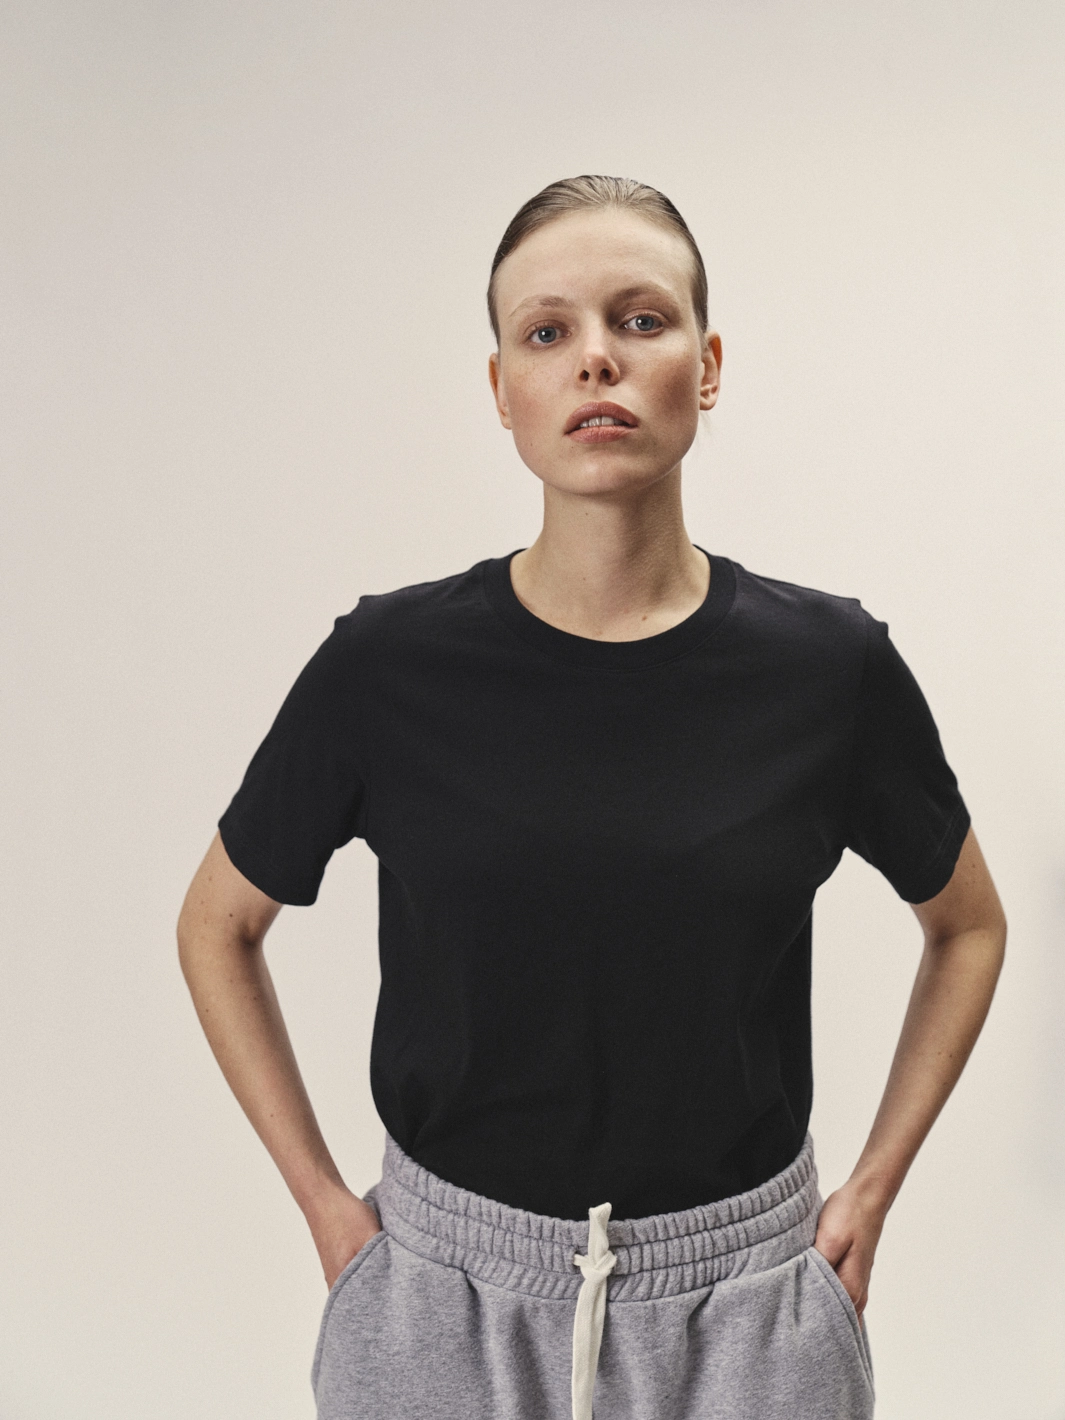 Weibliches Model mit Blick in die Kamera, Fokus auf das schwarze Rundhals-T-Shirt